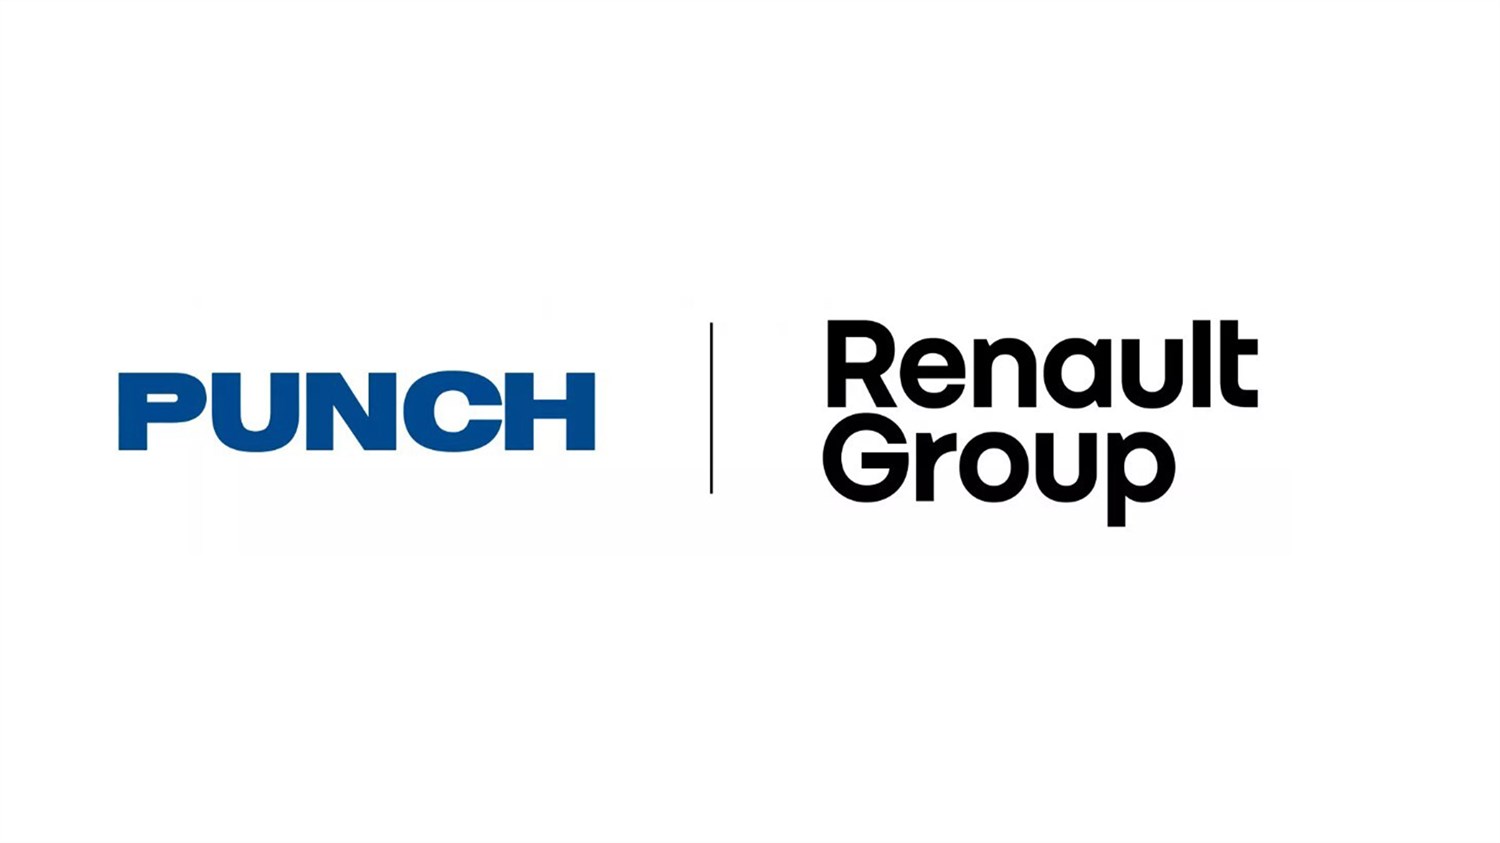 Punch in RG logo